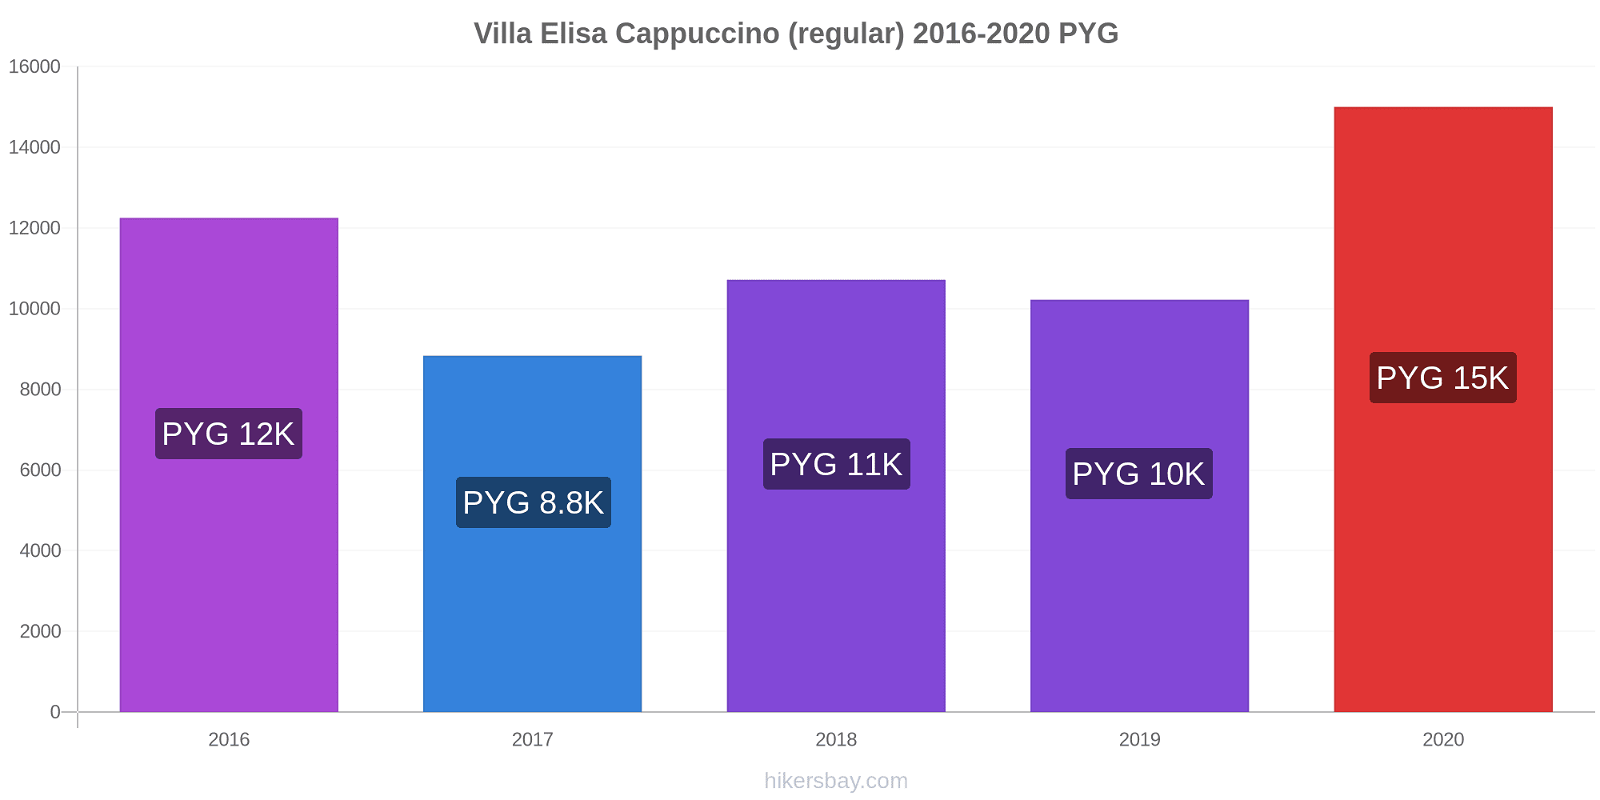 Villa Elisa price changes Cappuccino (regular) hikersbay.com